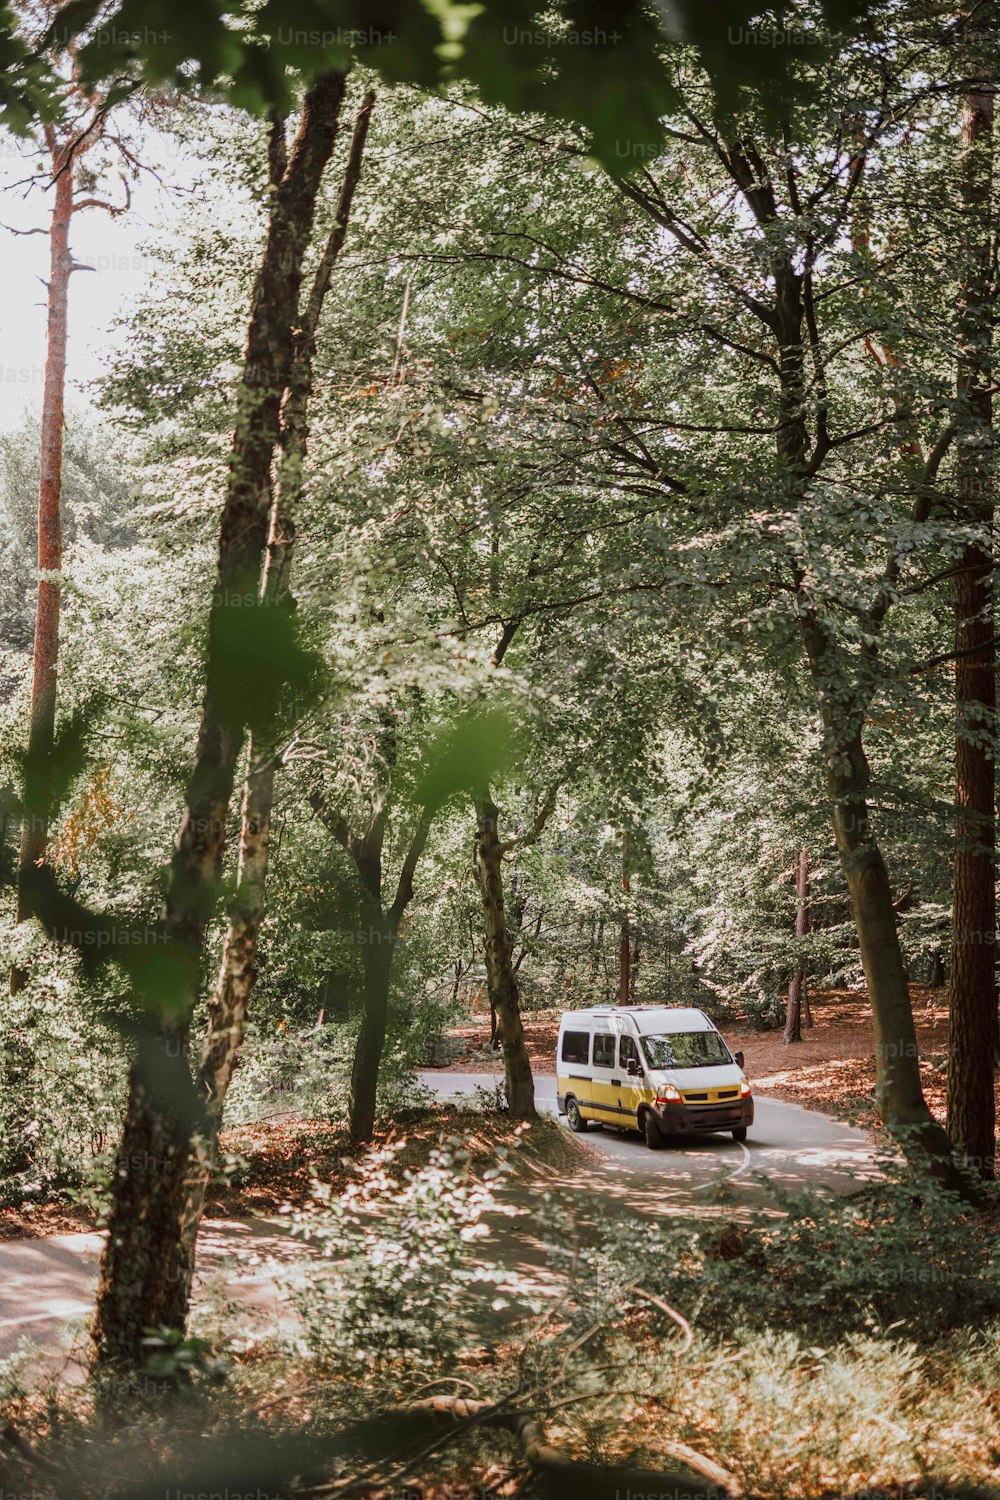 uma van está estacionada no meio da floresta